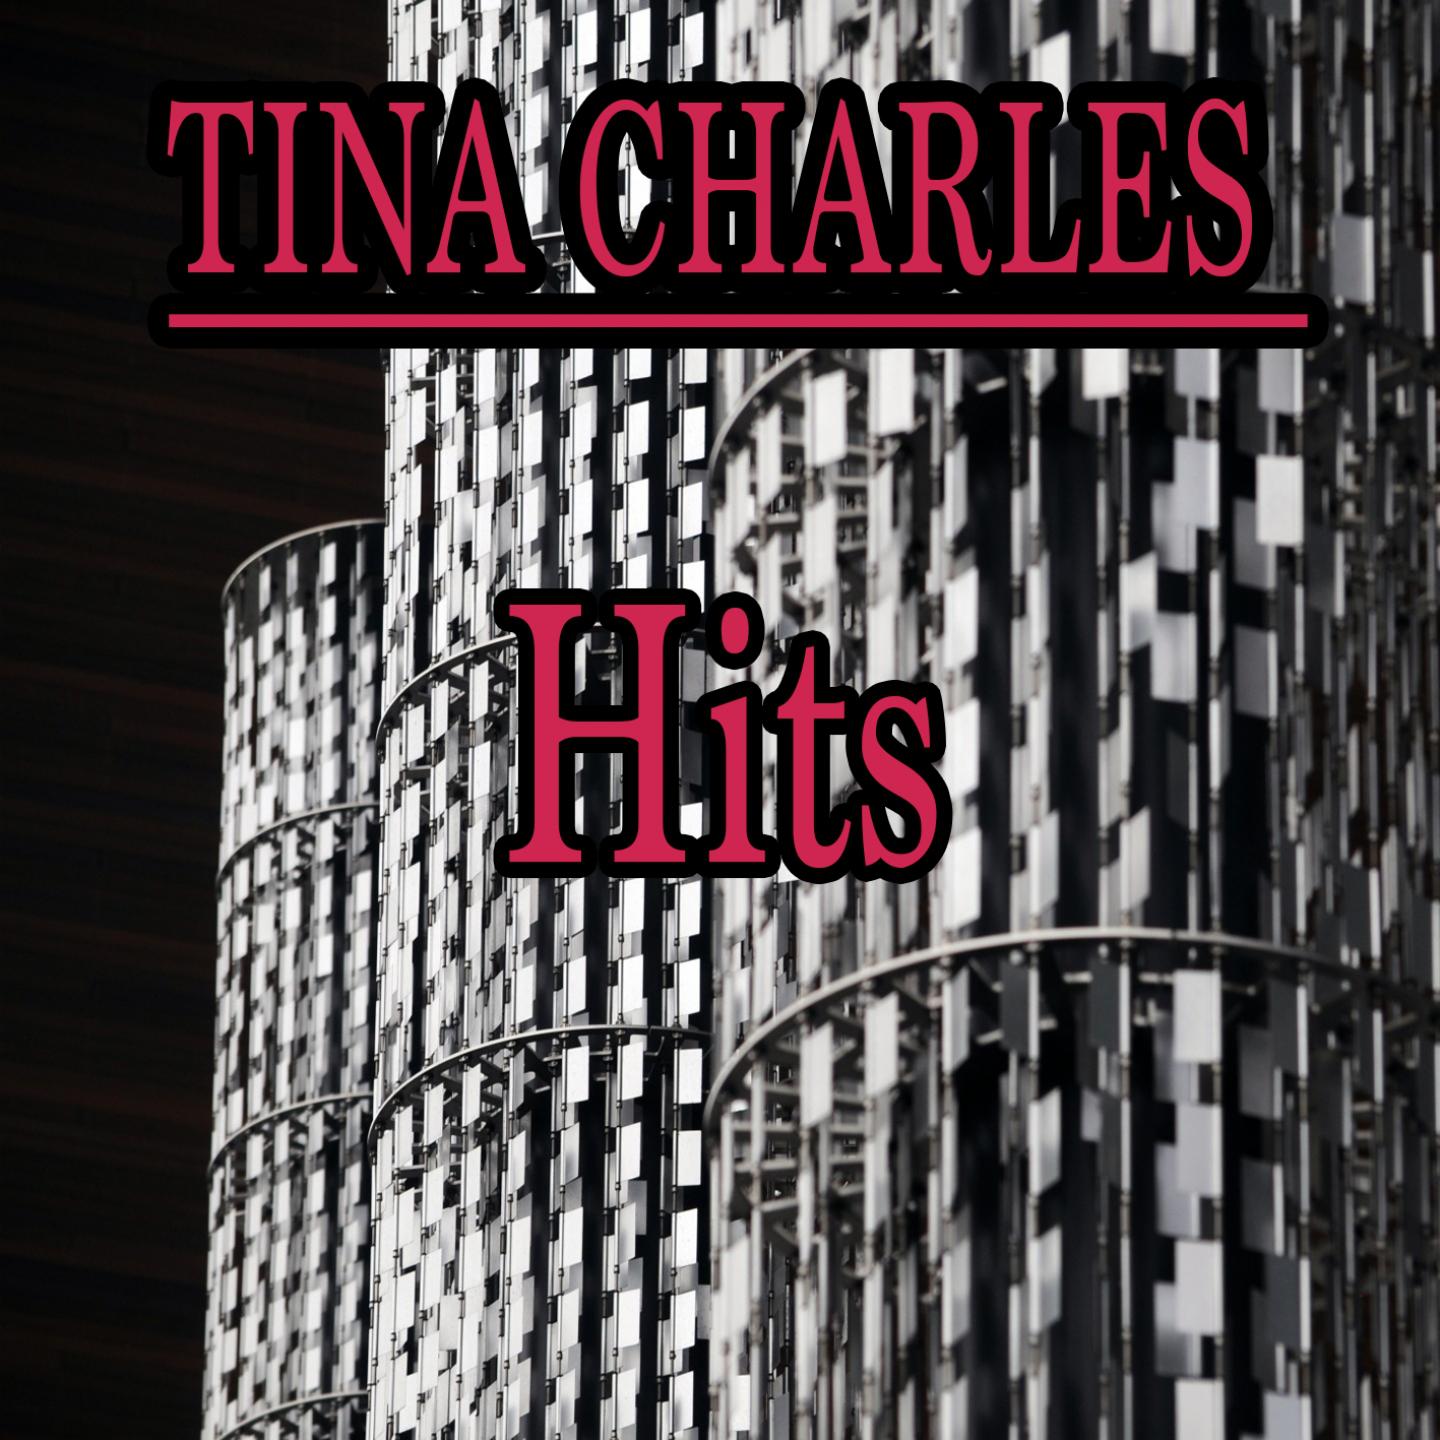 Tina Charles Hits